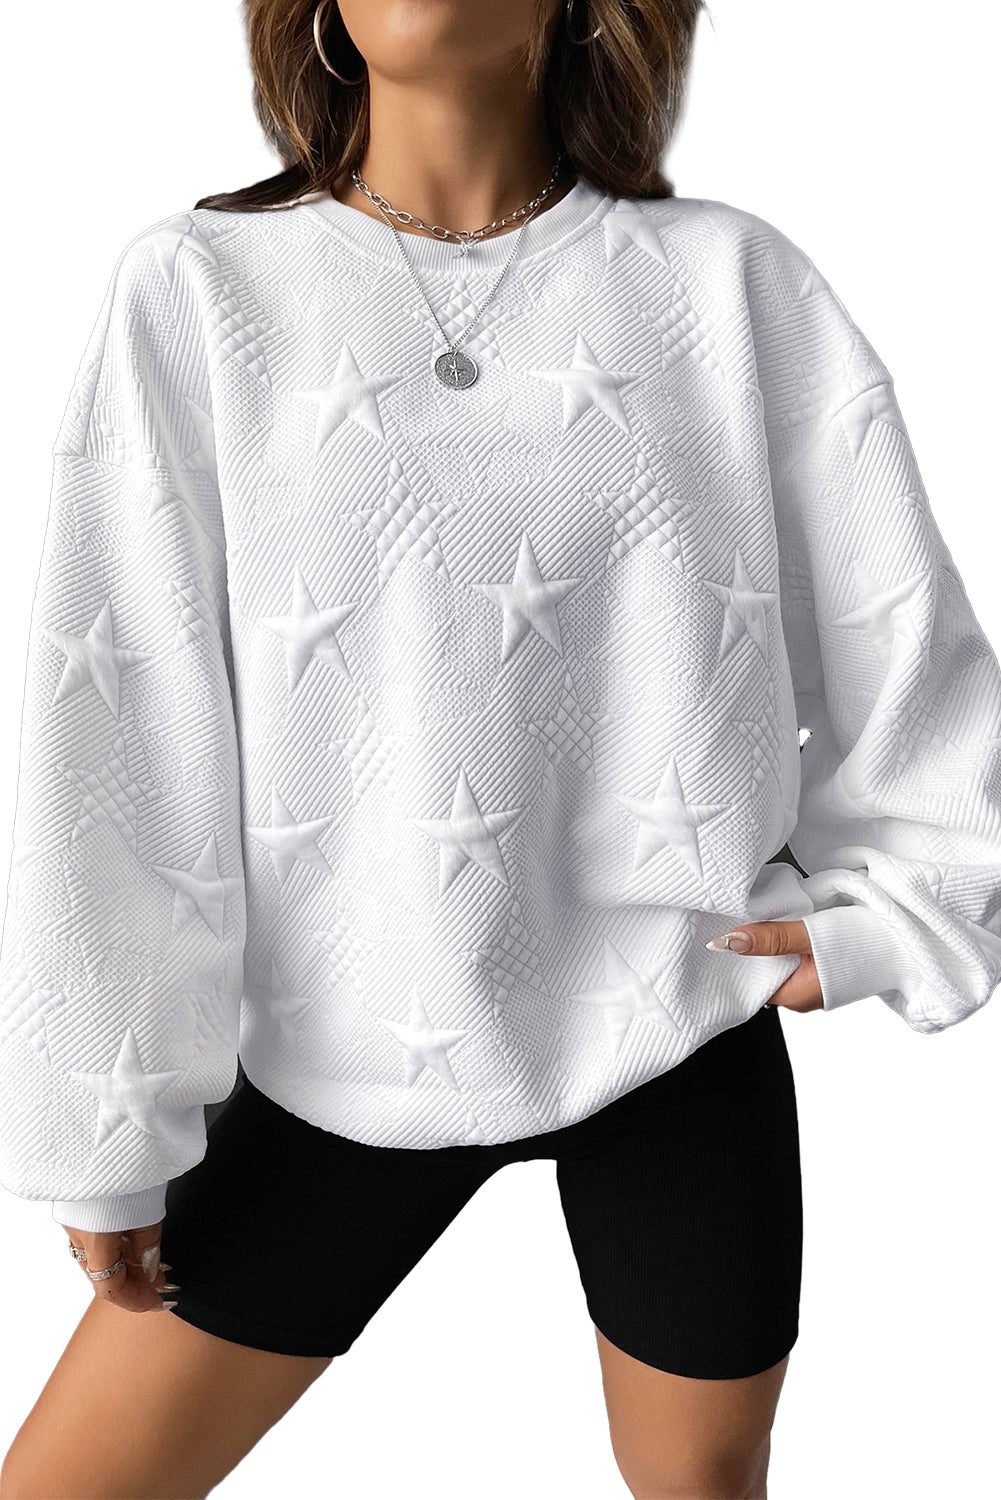 Pulover s spuščenimi rameni z vtisnjeno teksturo v obliki zvezd breskovega cveta